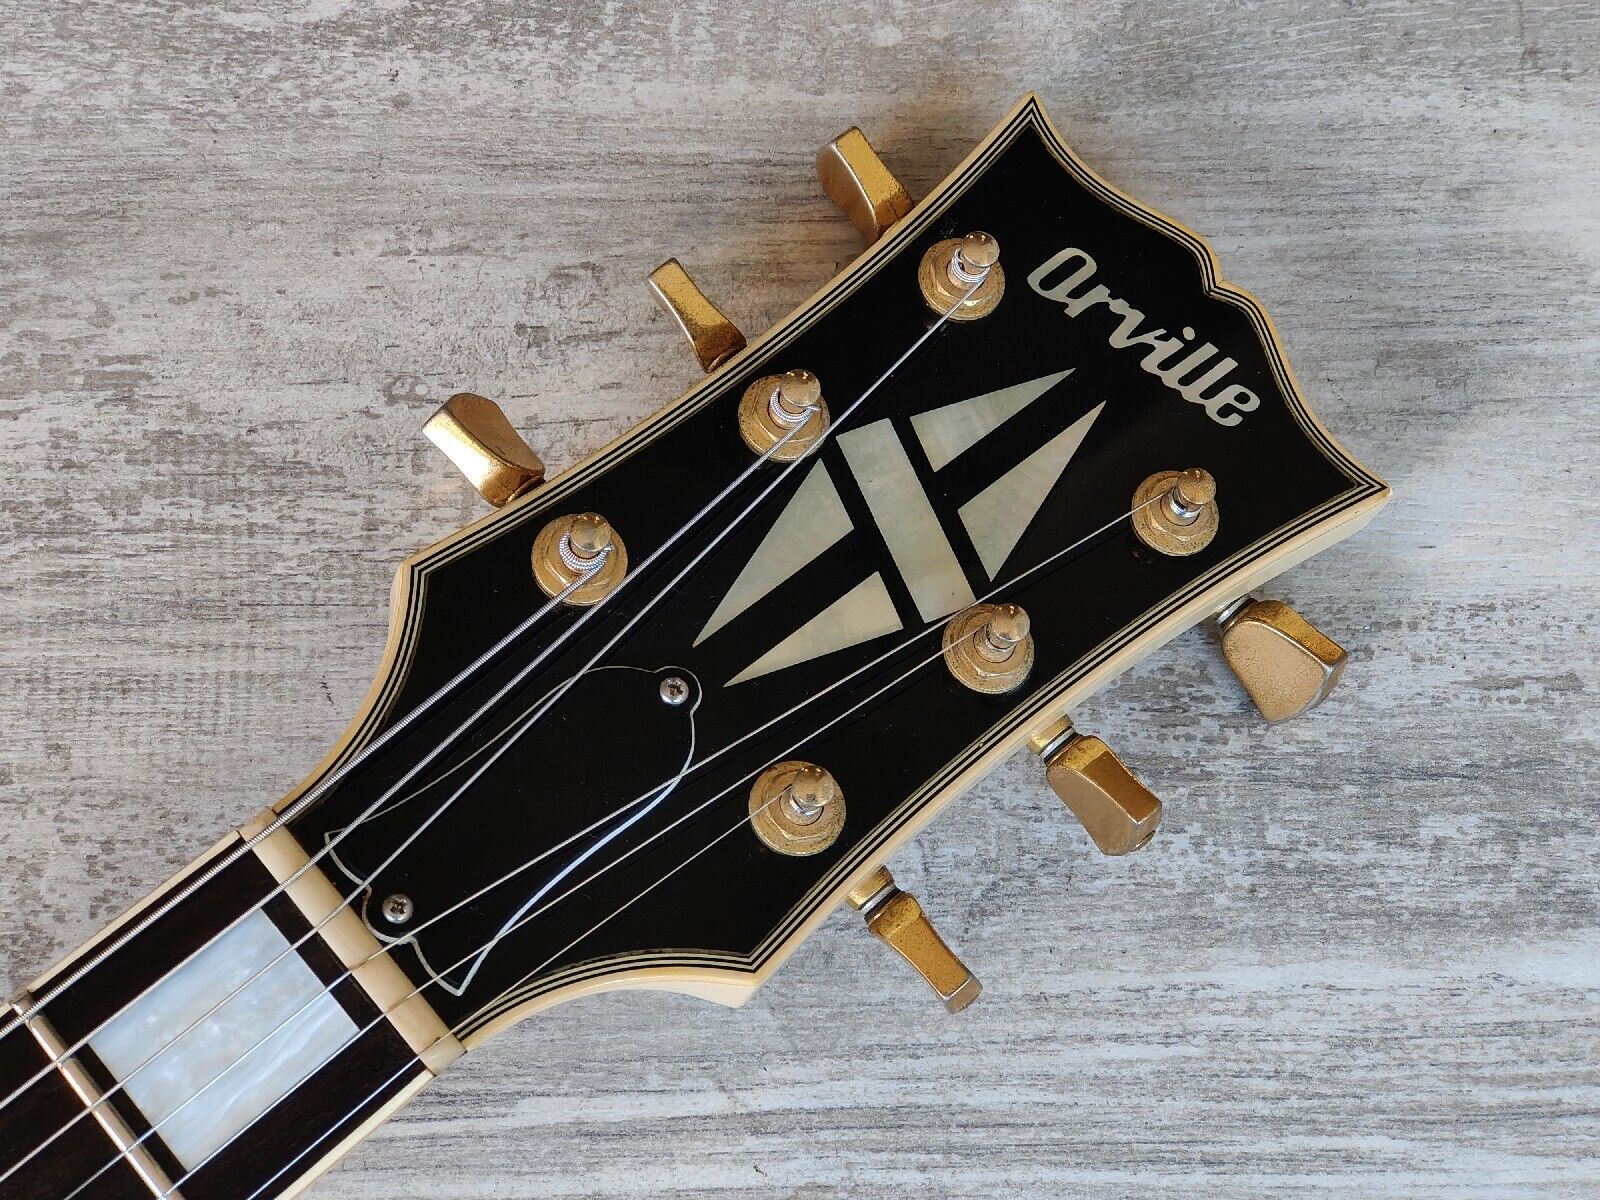 1989 Orville (Gibson) Japan LPC-75 '60's Reissue Les Paul Custom (White)